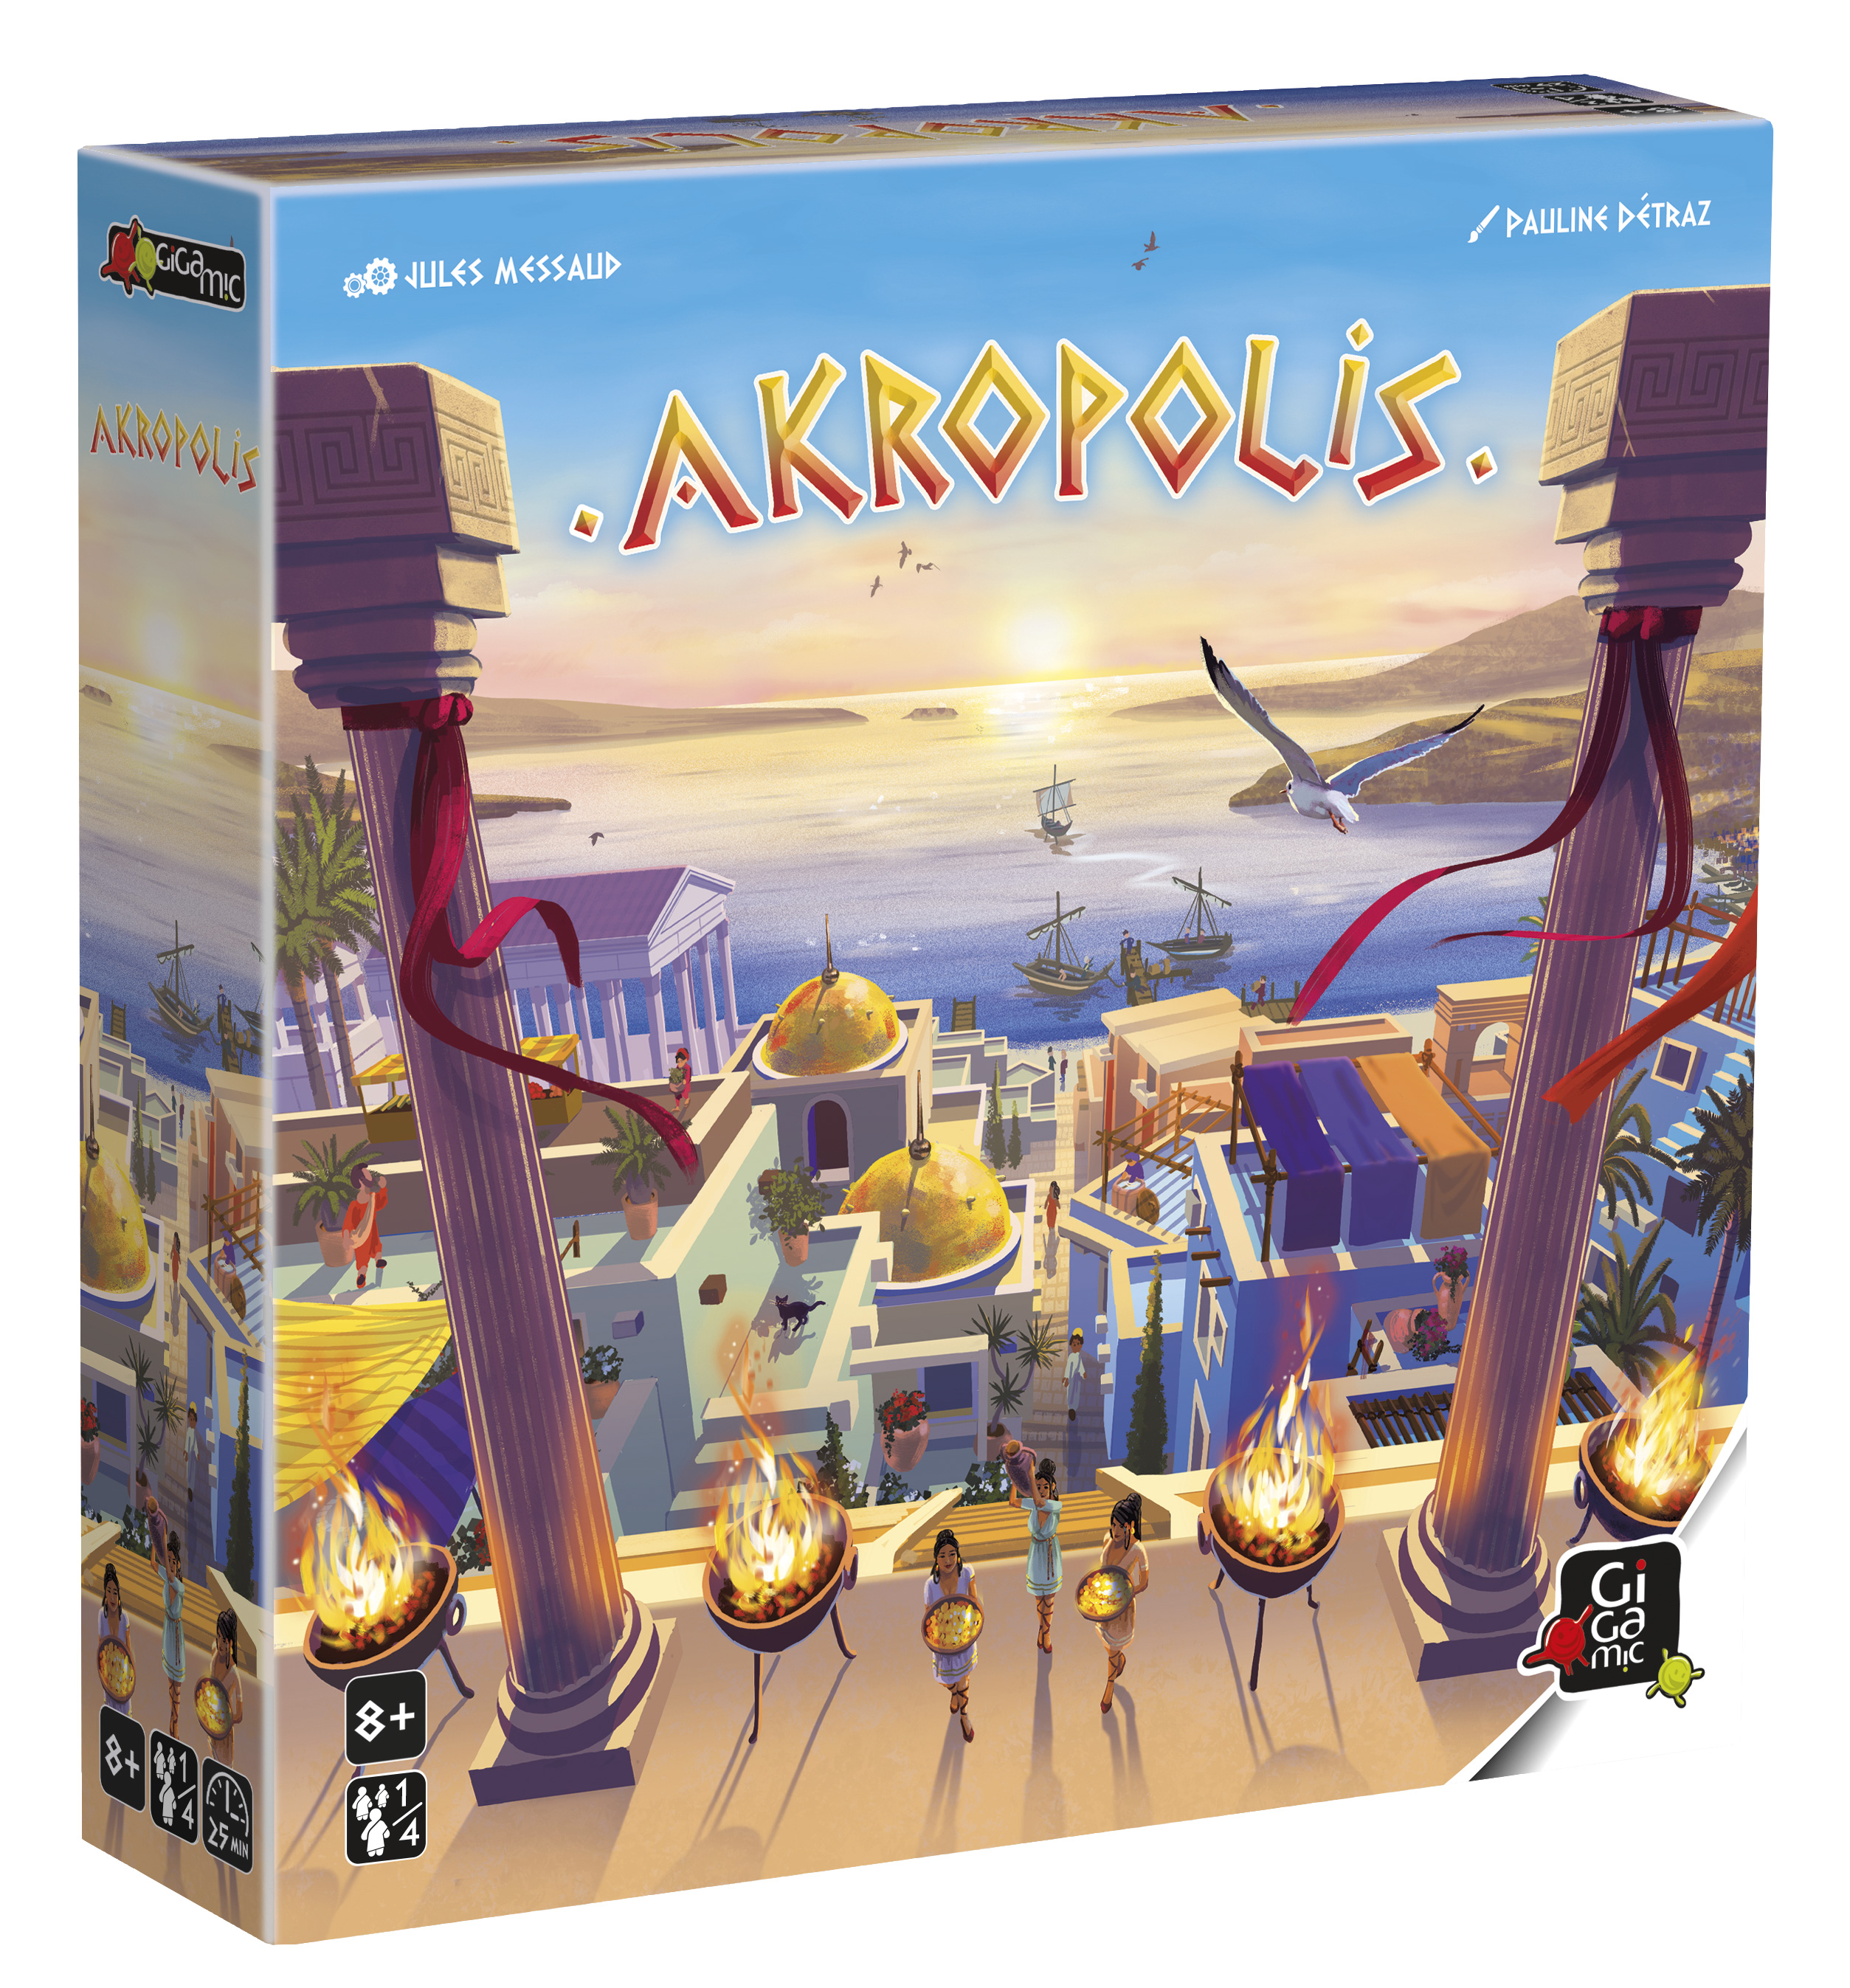 Akropolis, le meilleur jeu de société Gigamic